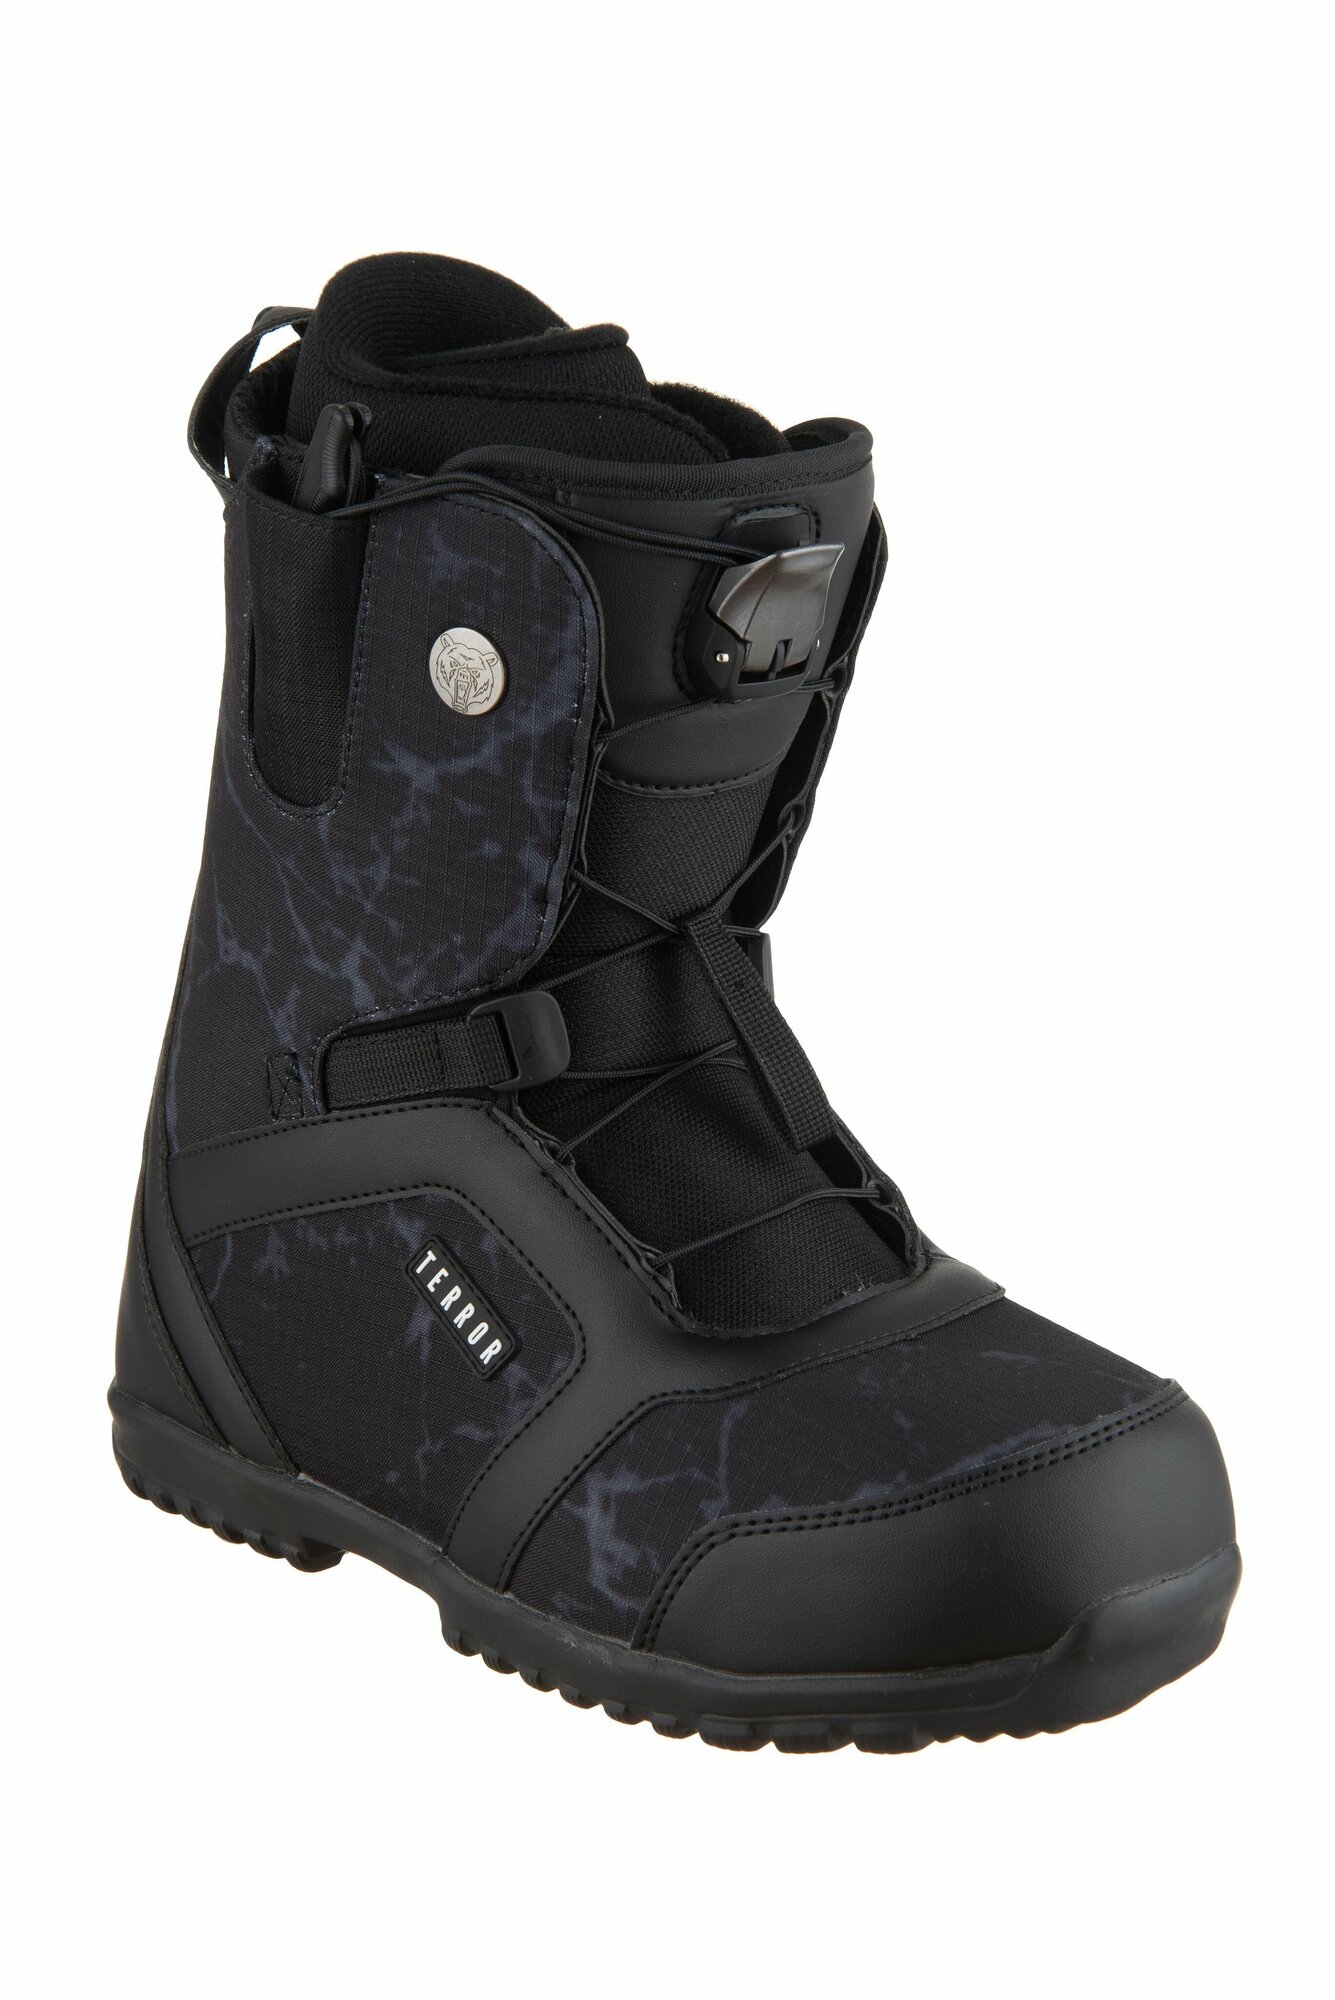 Ботинки сноубордические TERROR CREW Fastec Black (43 RU / 29 cm)